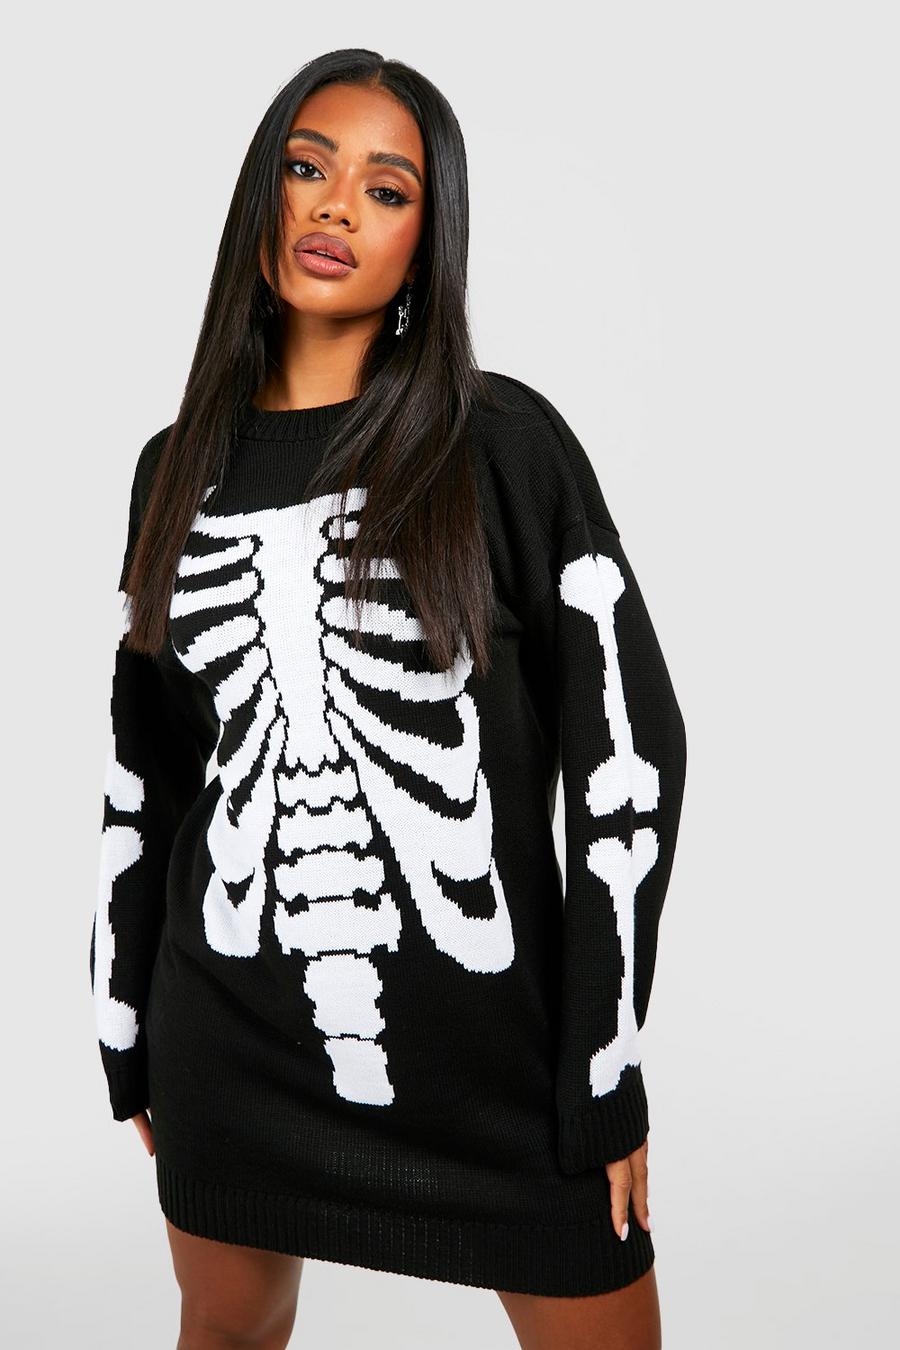 Black svart Halloween Skeleton Knitted Jumper Dress